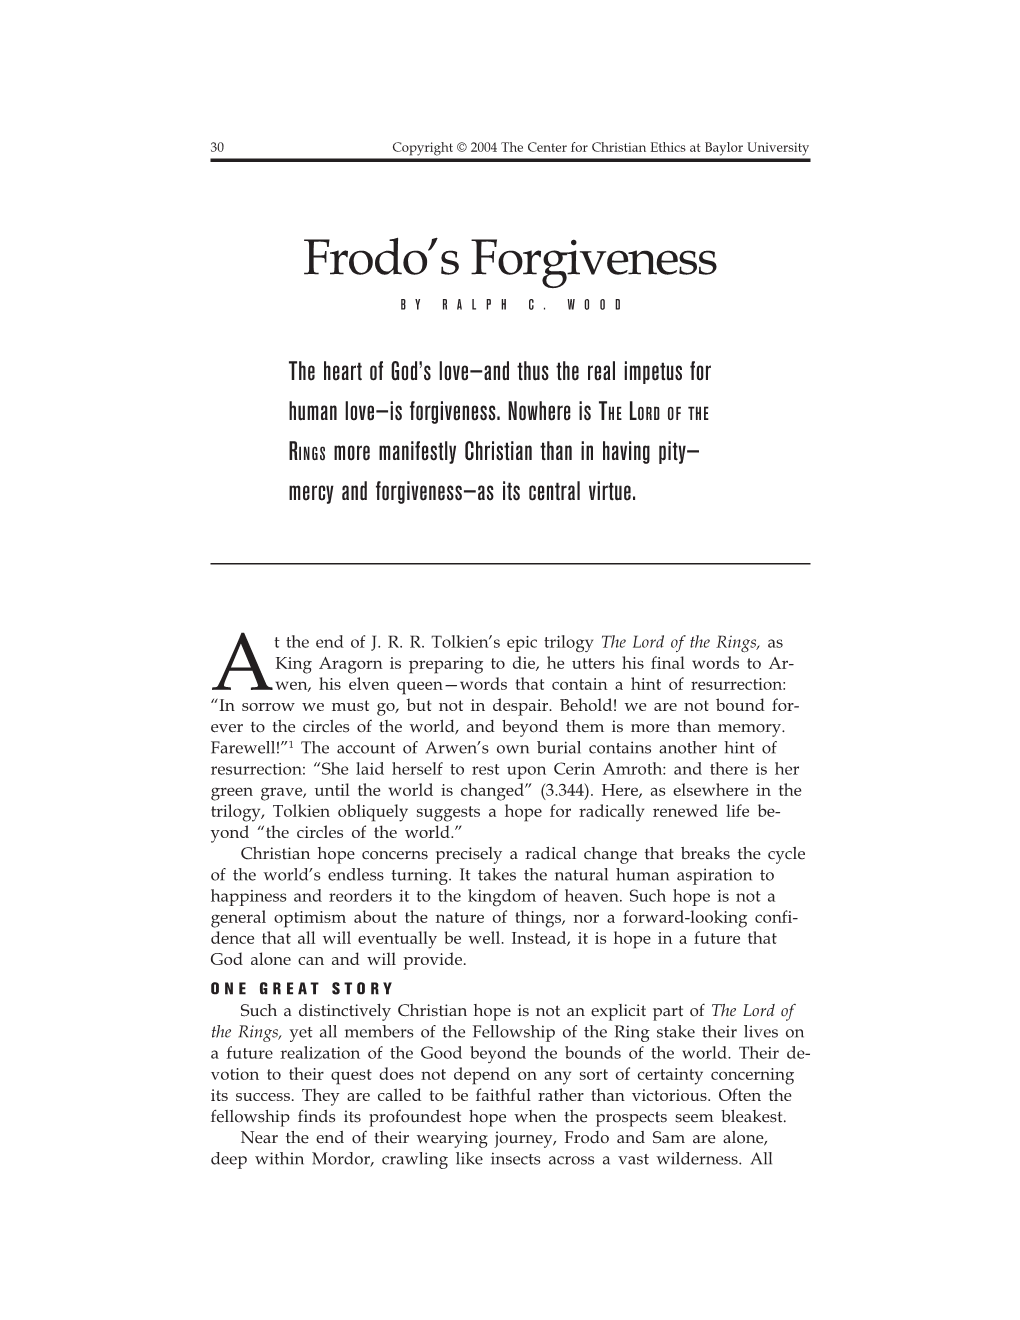 Frodo's Forgiveness